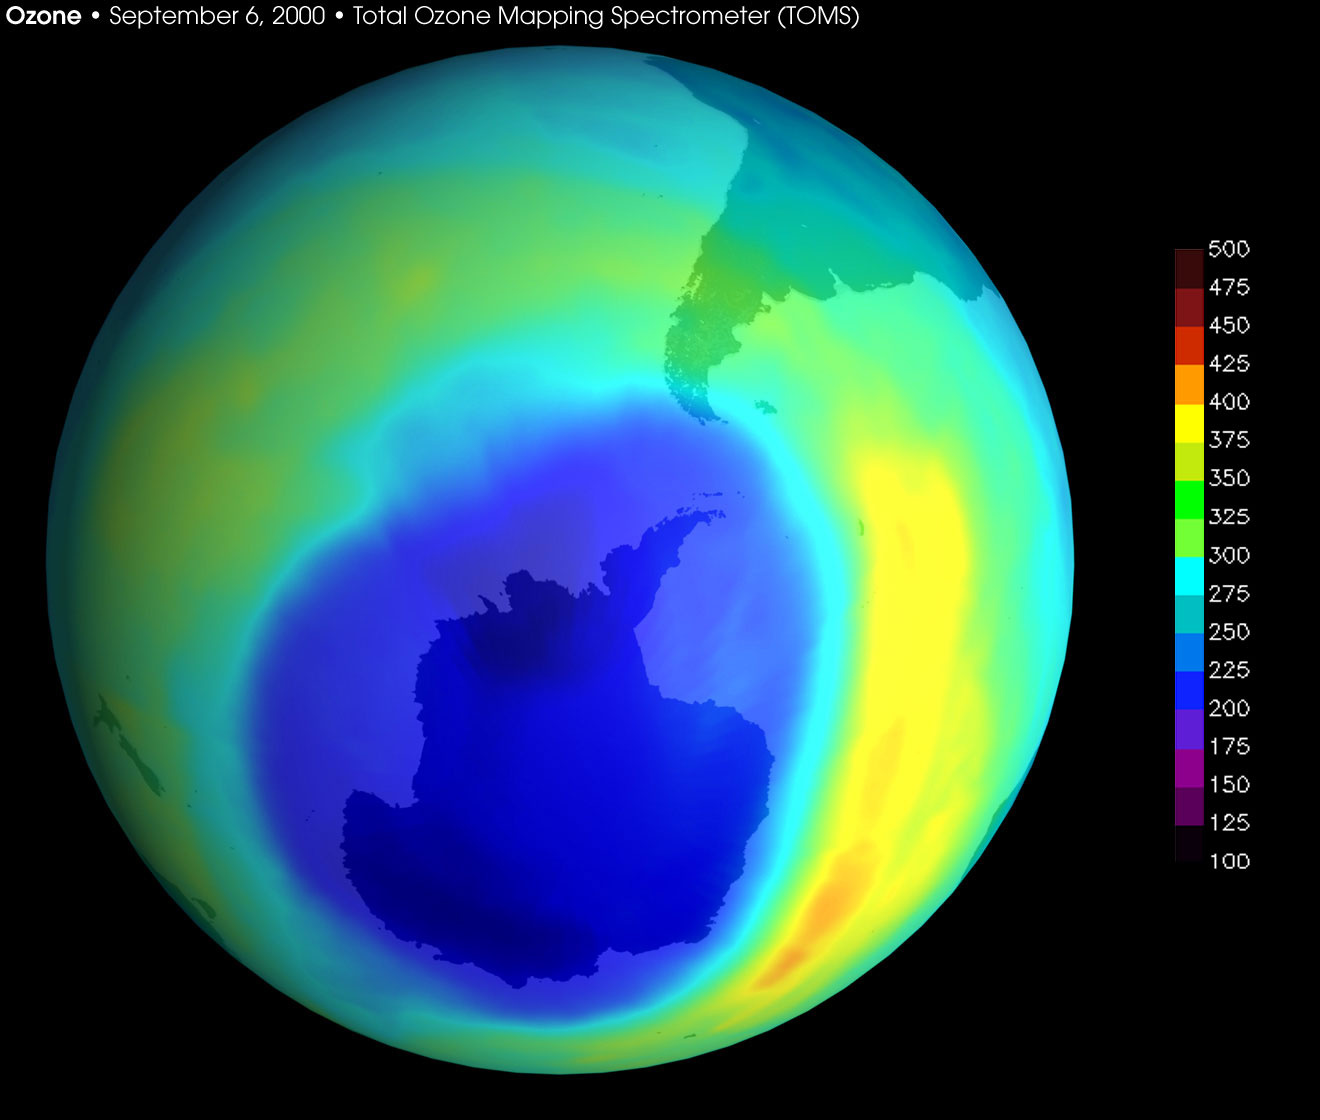 la capa de ozono la verdad escandalosa + yapa impresoinante